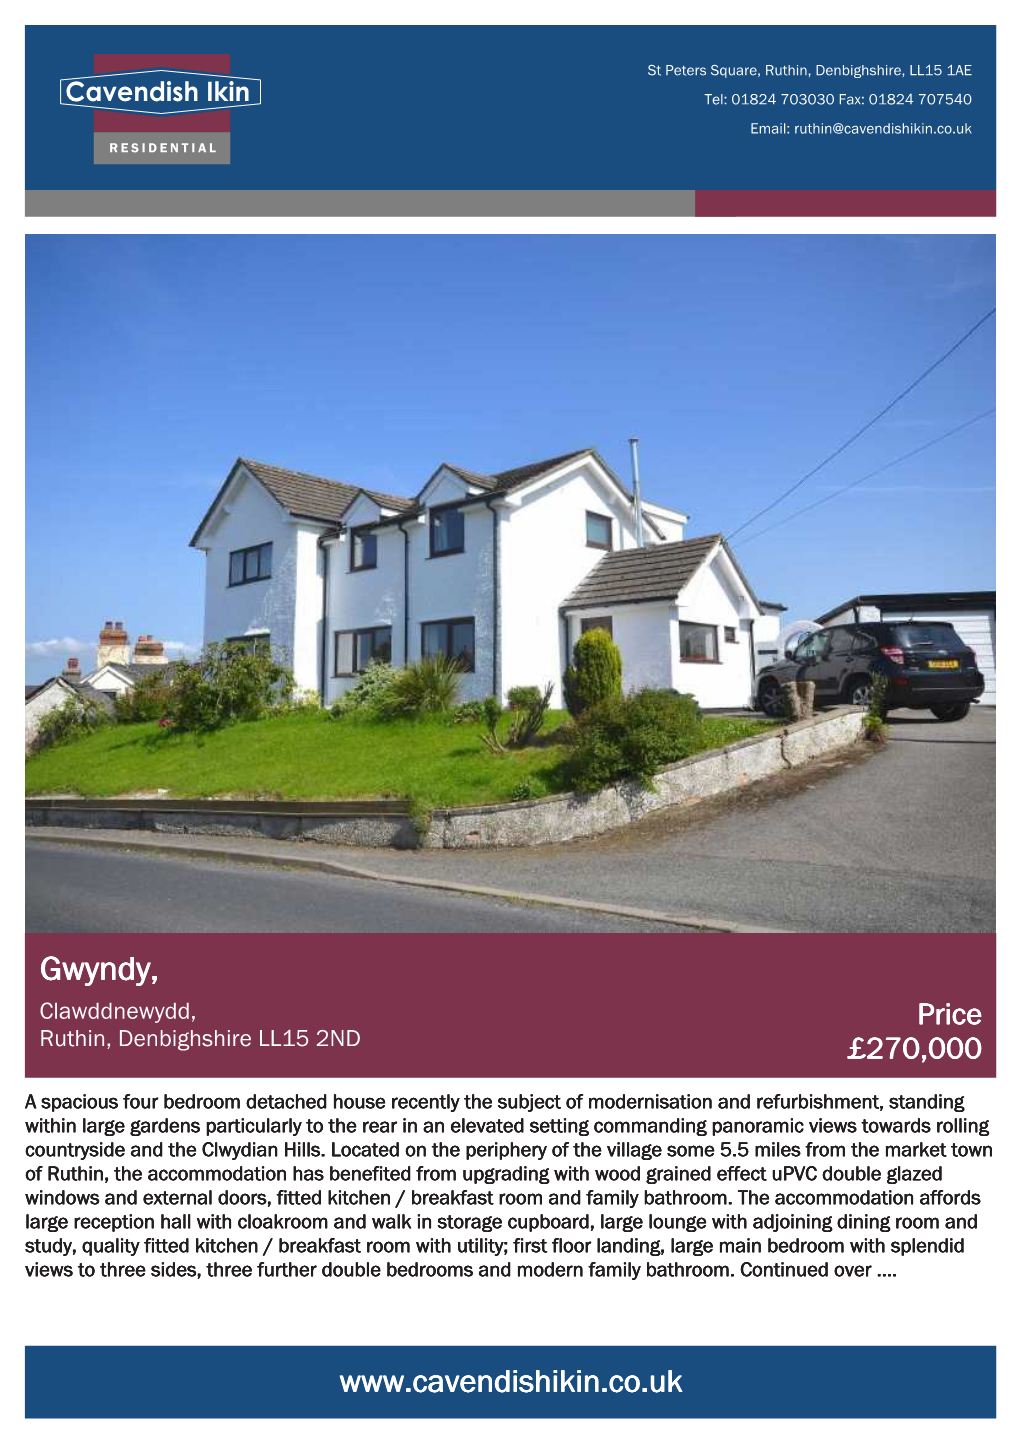 Gwyndy, Clawddnewydd, Price Ruthin, Denbighshire LL15 2ND £270,000